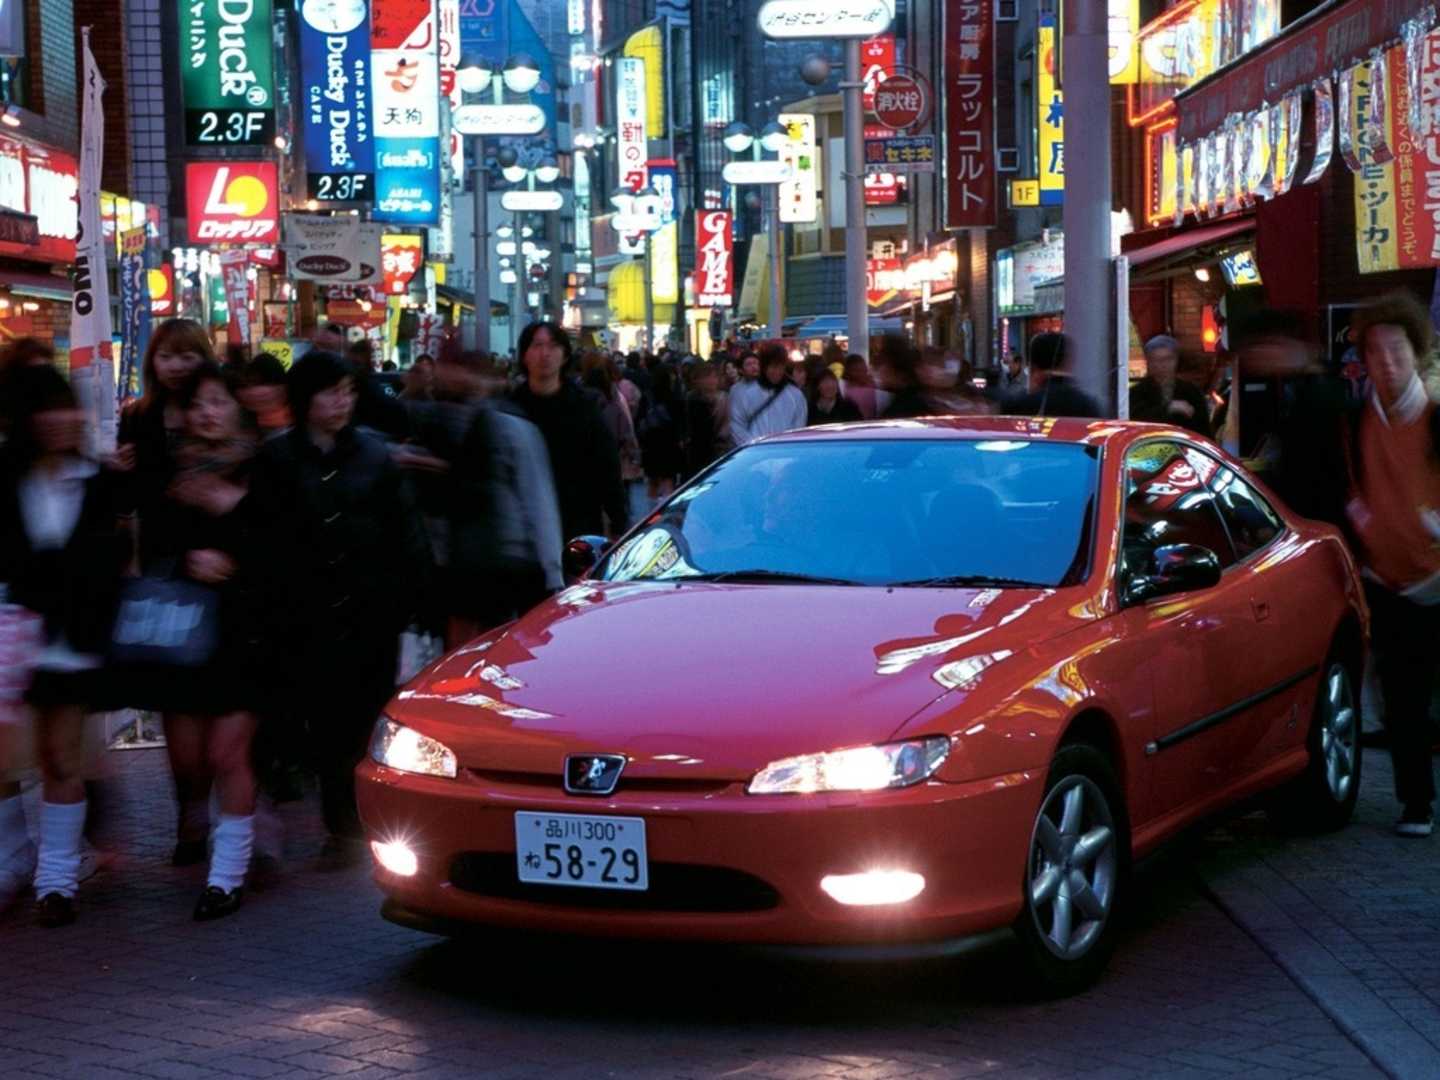 Un Coupé 406 dans sa configuration Export Japon.... Imaginez une version sportive siglée Peugeot-Venturi ?